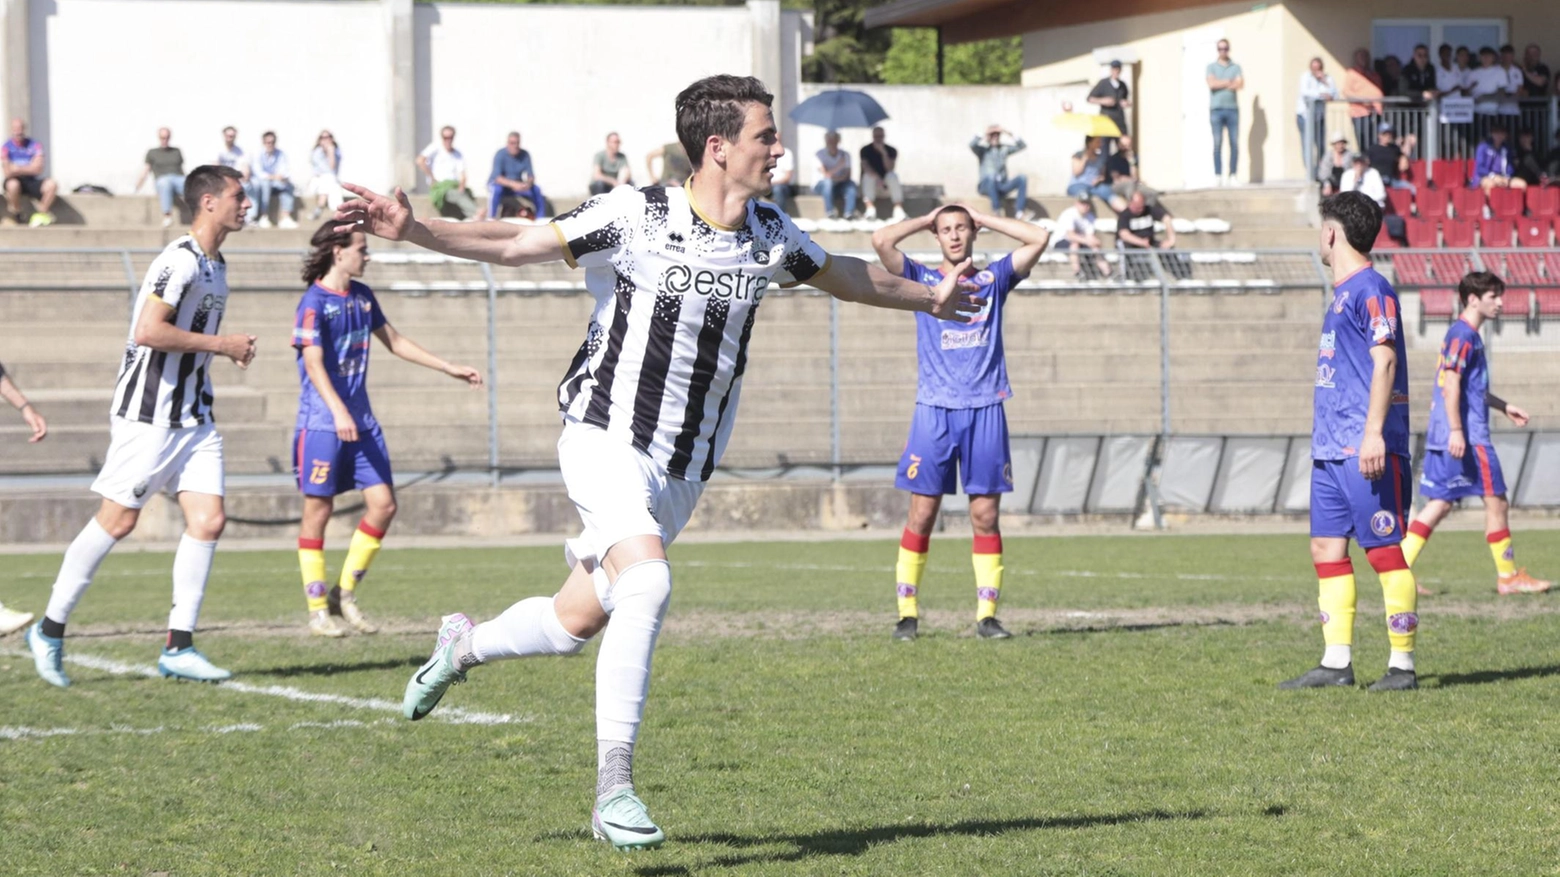 Il Siena vince 1-0 contro la Castiglionese a Castiglion Fiorentino, con Masini che segna l'unico gol. Partita equilibrata con poche emozioni, decisa da un tap-in nella ripresa.